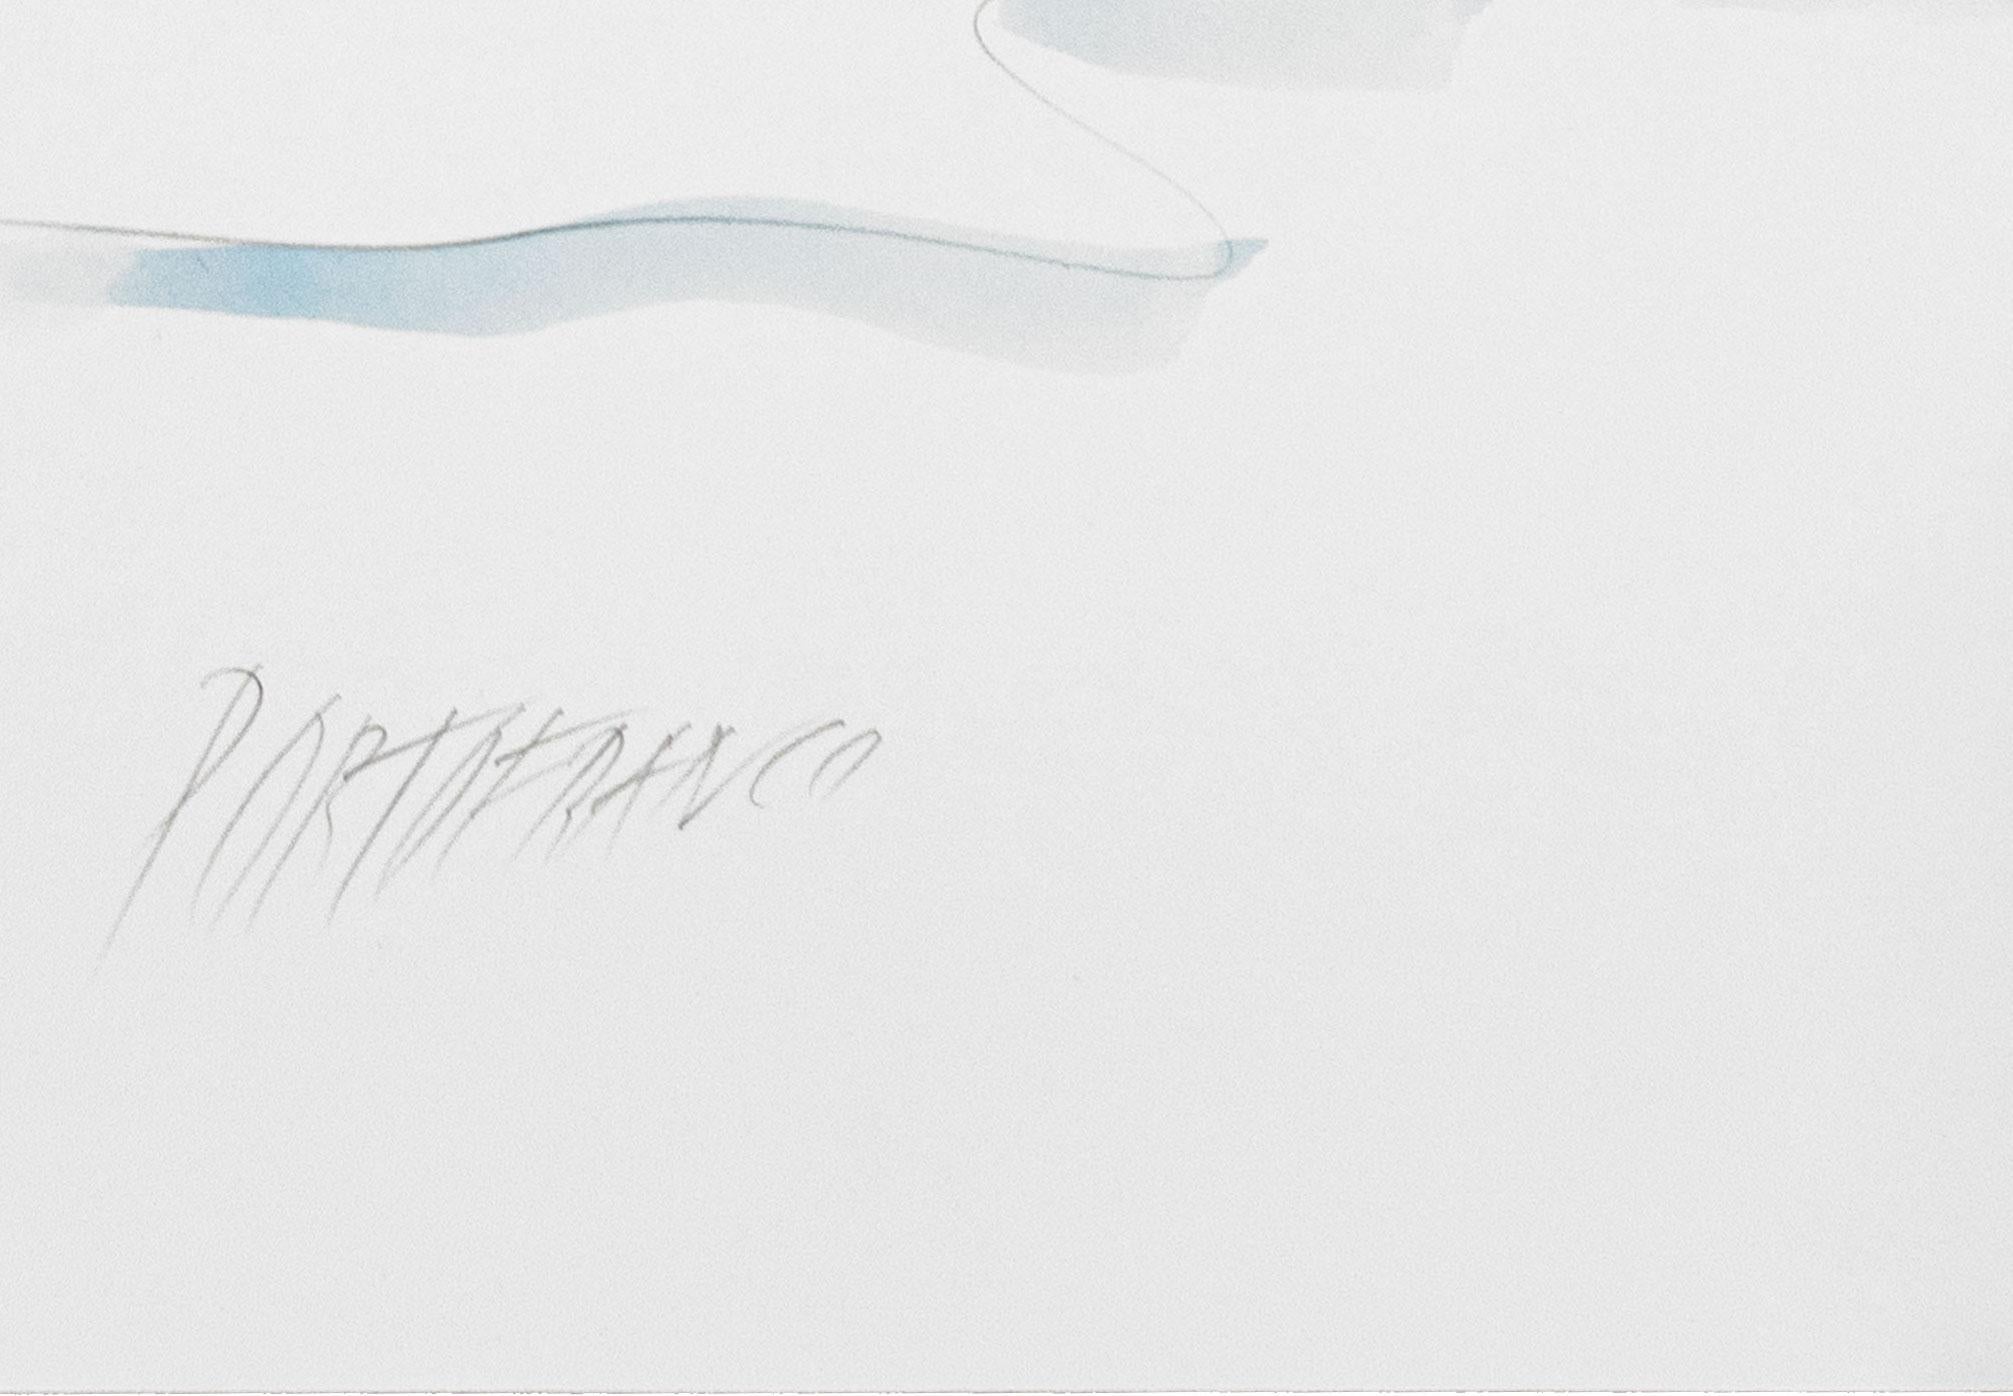 Senza Titolo, ca. 2000, Disegno su carta, Illustrazioni a penna, Acquerelli - Contemporary Art by Lisa Ponti